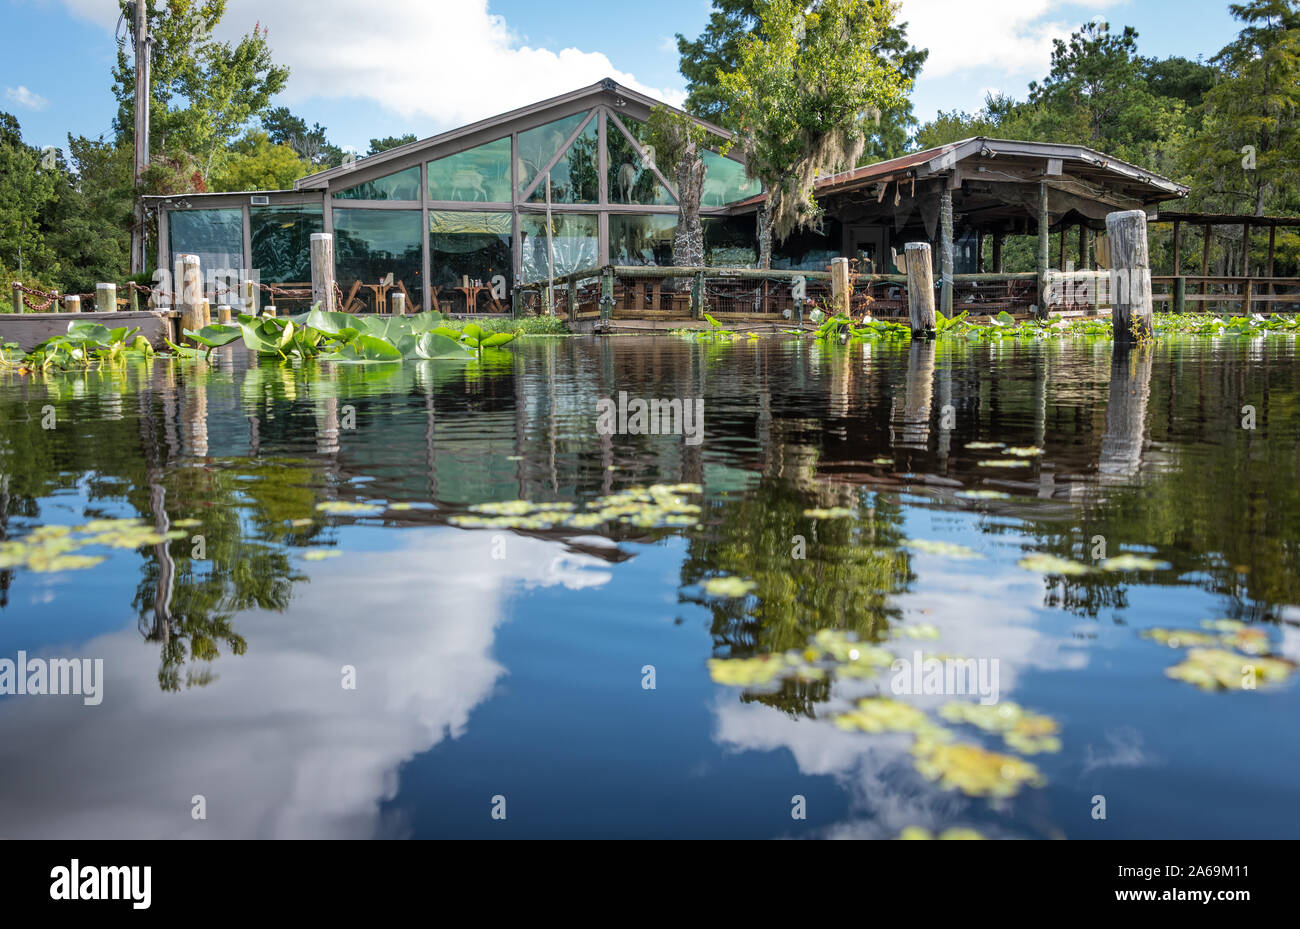 Clark's Fish Camp offre una esperienza ristorativa unica su Julington Creek a Jacksonville, FL con la privata più grande collezione di tassidermia negli Stati Uniti. Foto Stock